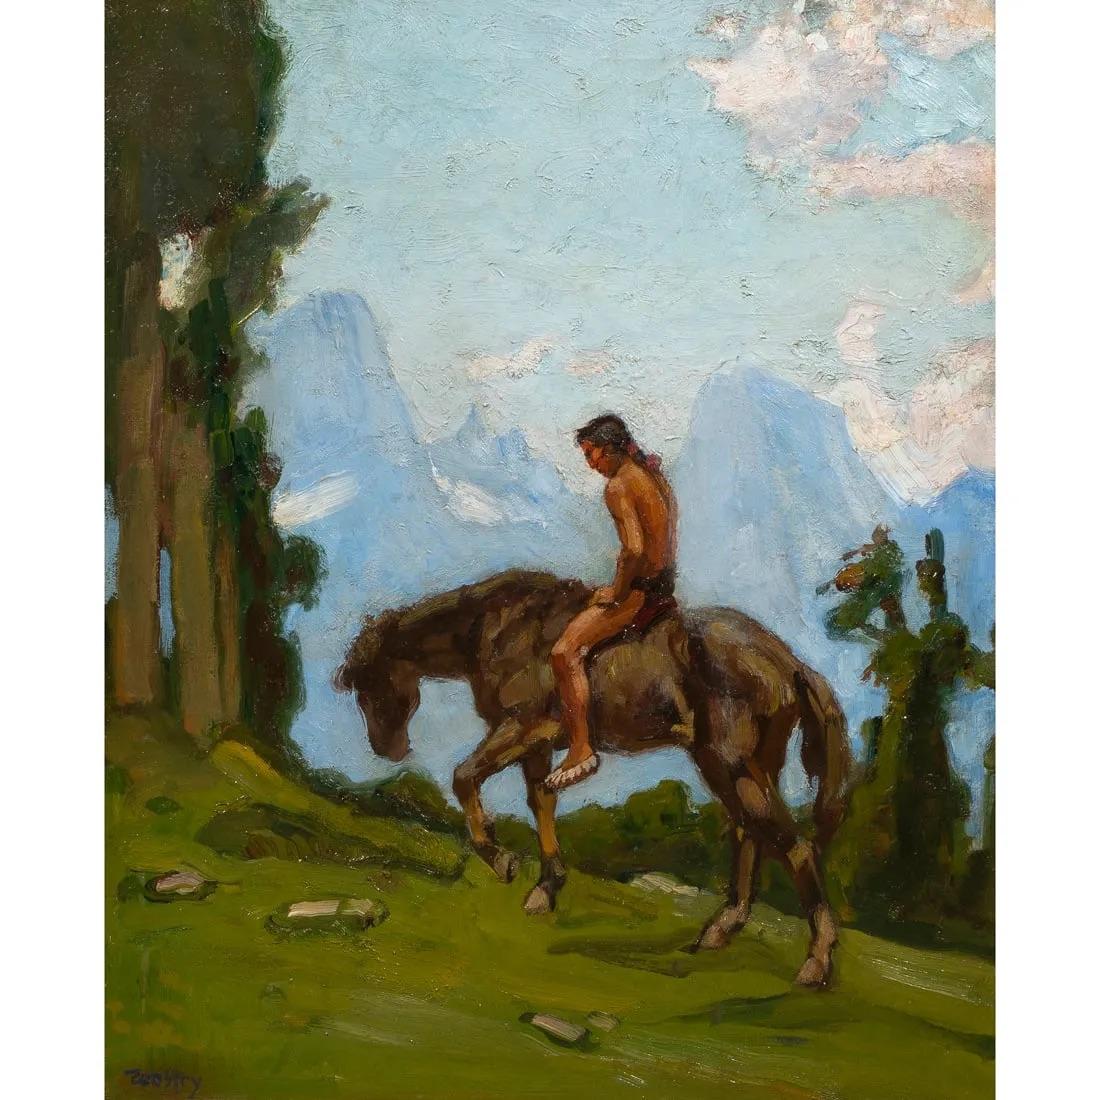 Cario Wostry (Österreicher, 1865-1943), Indianer zu Pferd, Öl auf Leinwand, auf Karton aufgezogen, links unten signiert, Karton: 24 